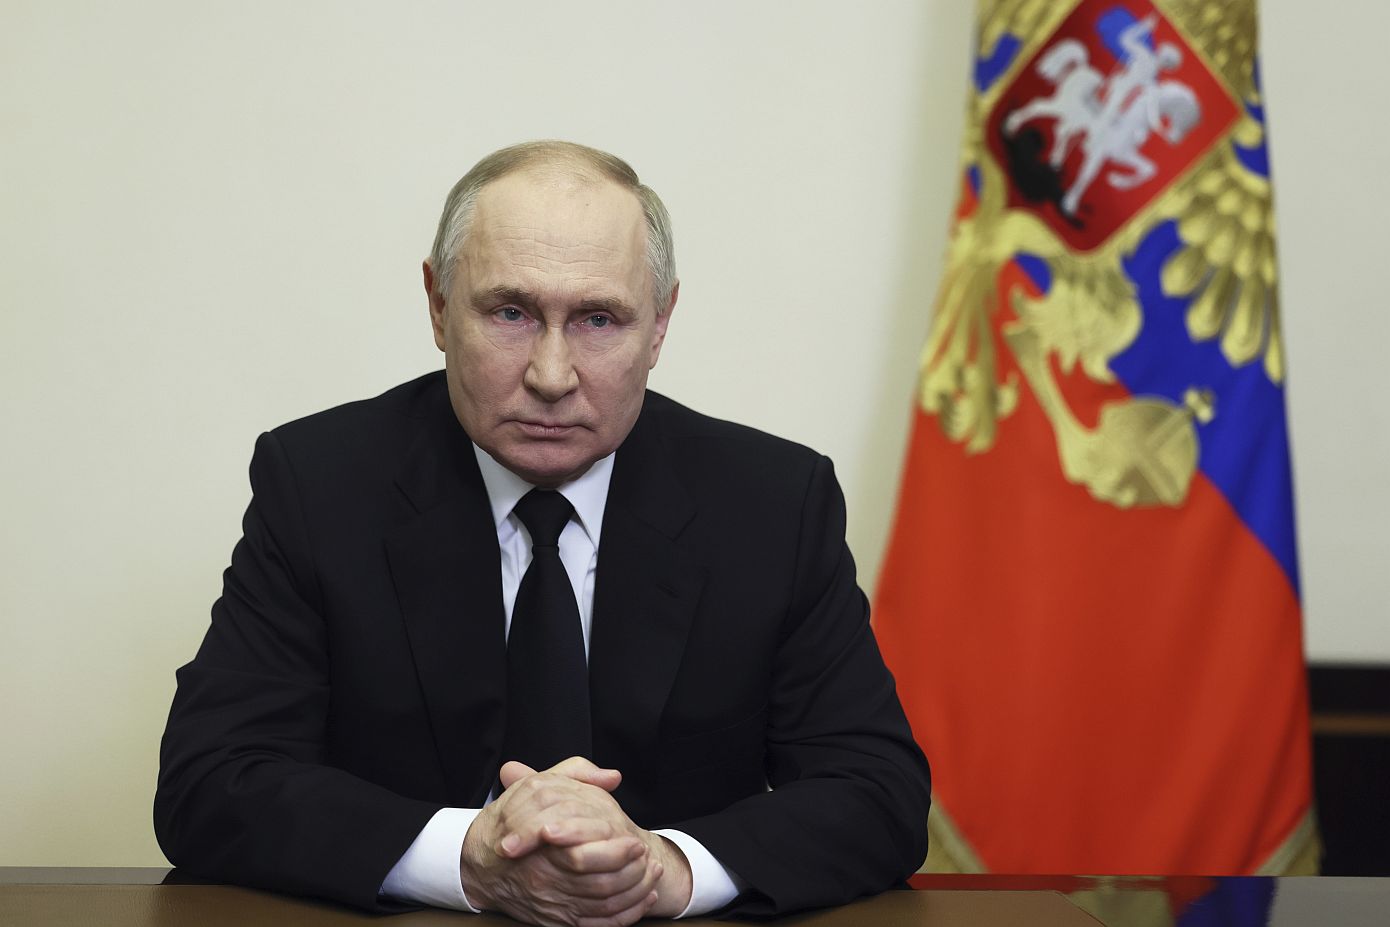 Ο Πούτιν δεν προβλέπει προς το παρόν συνάντηση με τις οικογένειες των θυμάτων, δηλώνει το Κρεμλίνο